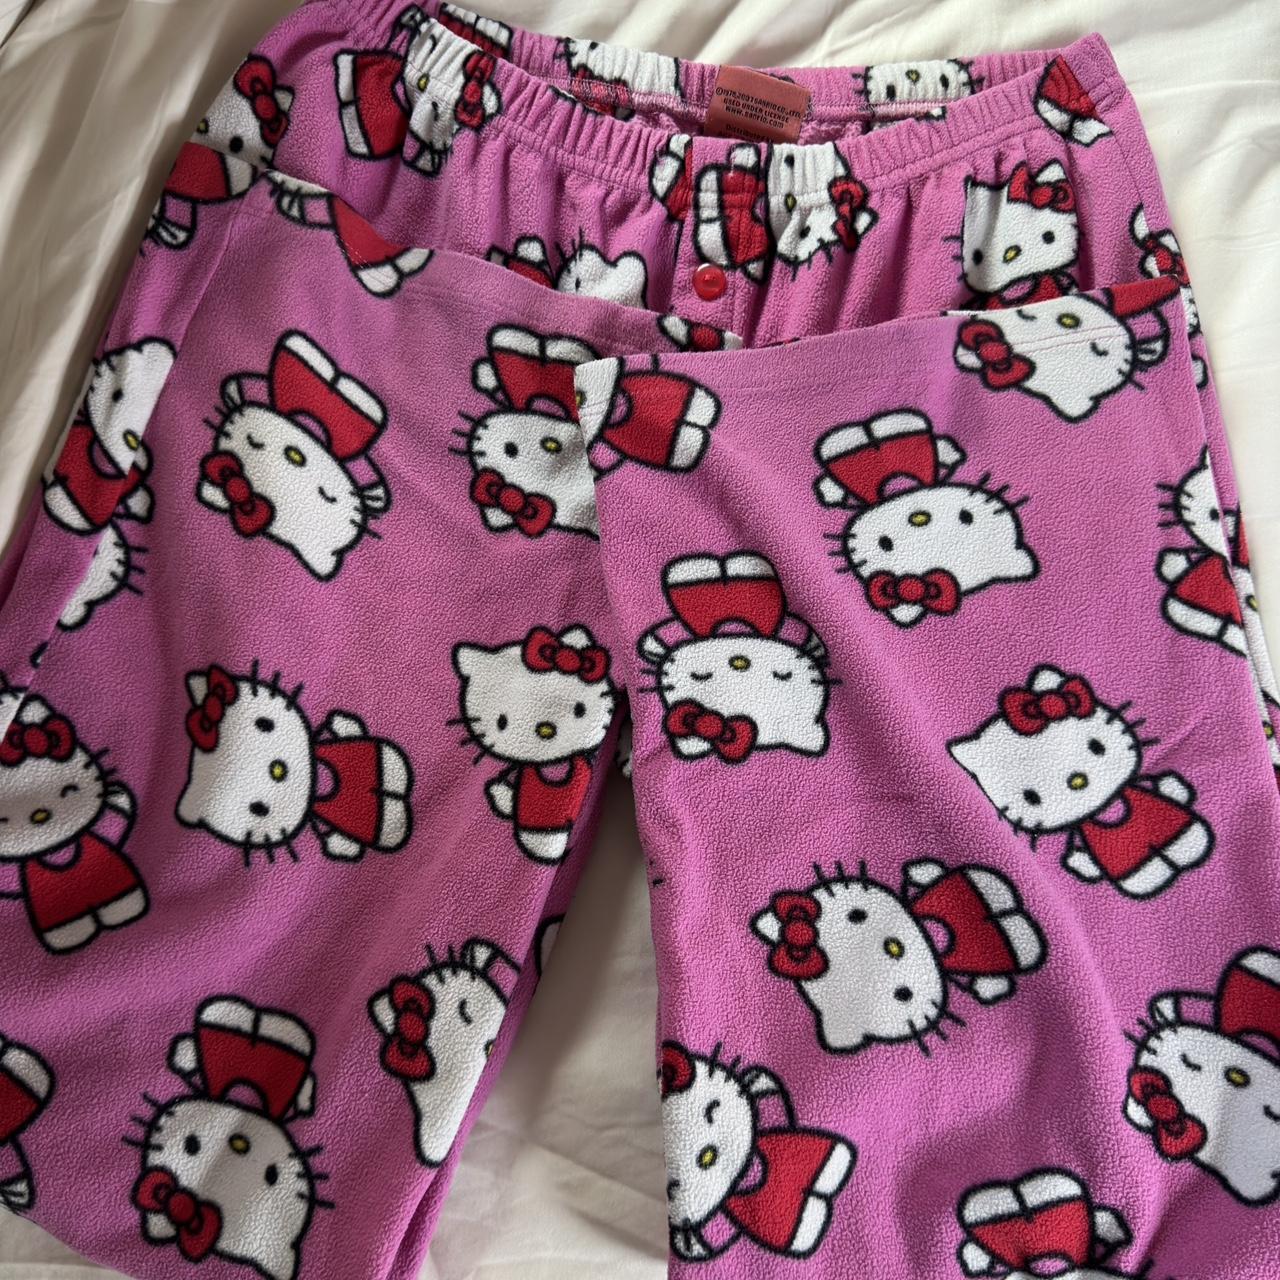 Hello Kitty Women's Trousers | Depop